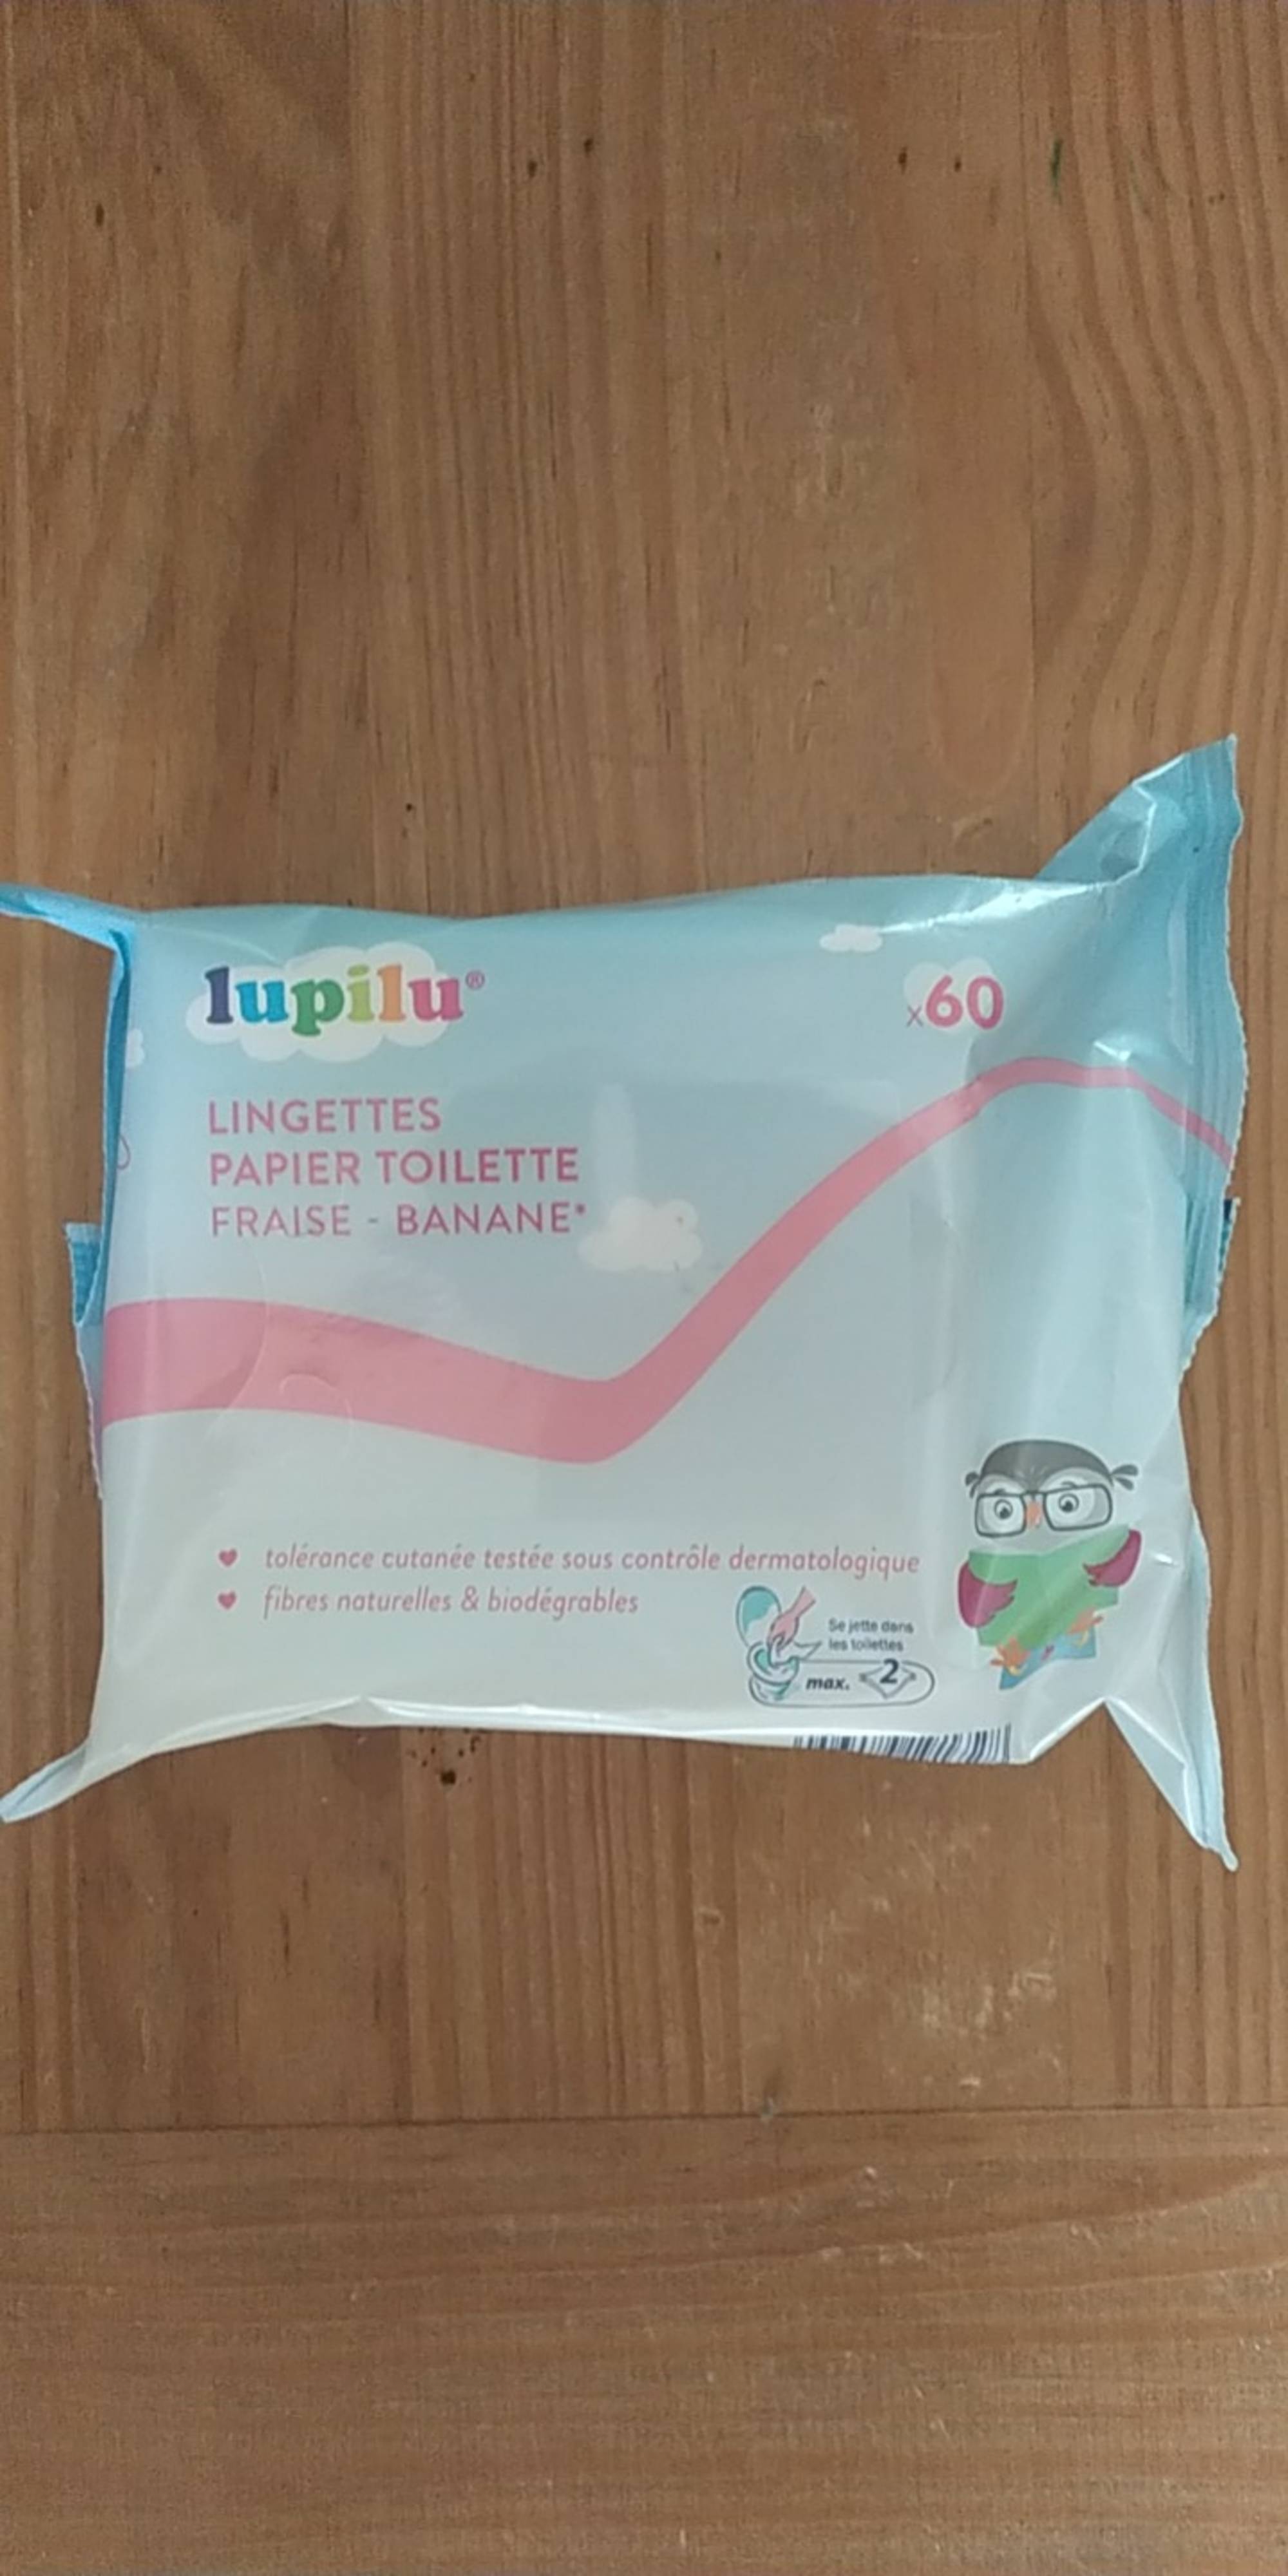 LUPILU - Lingettes papier toilette